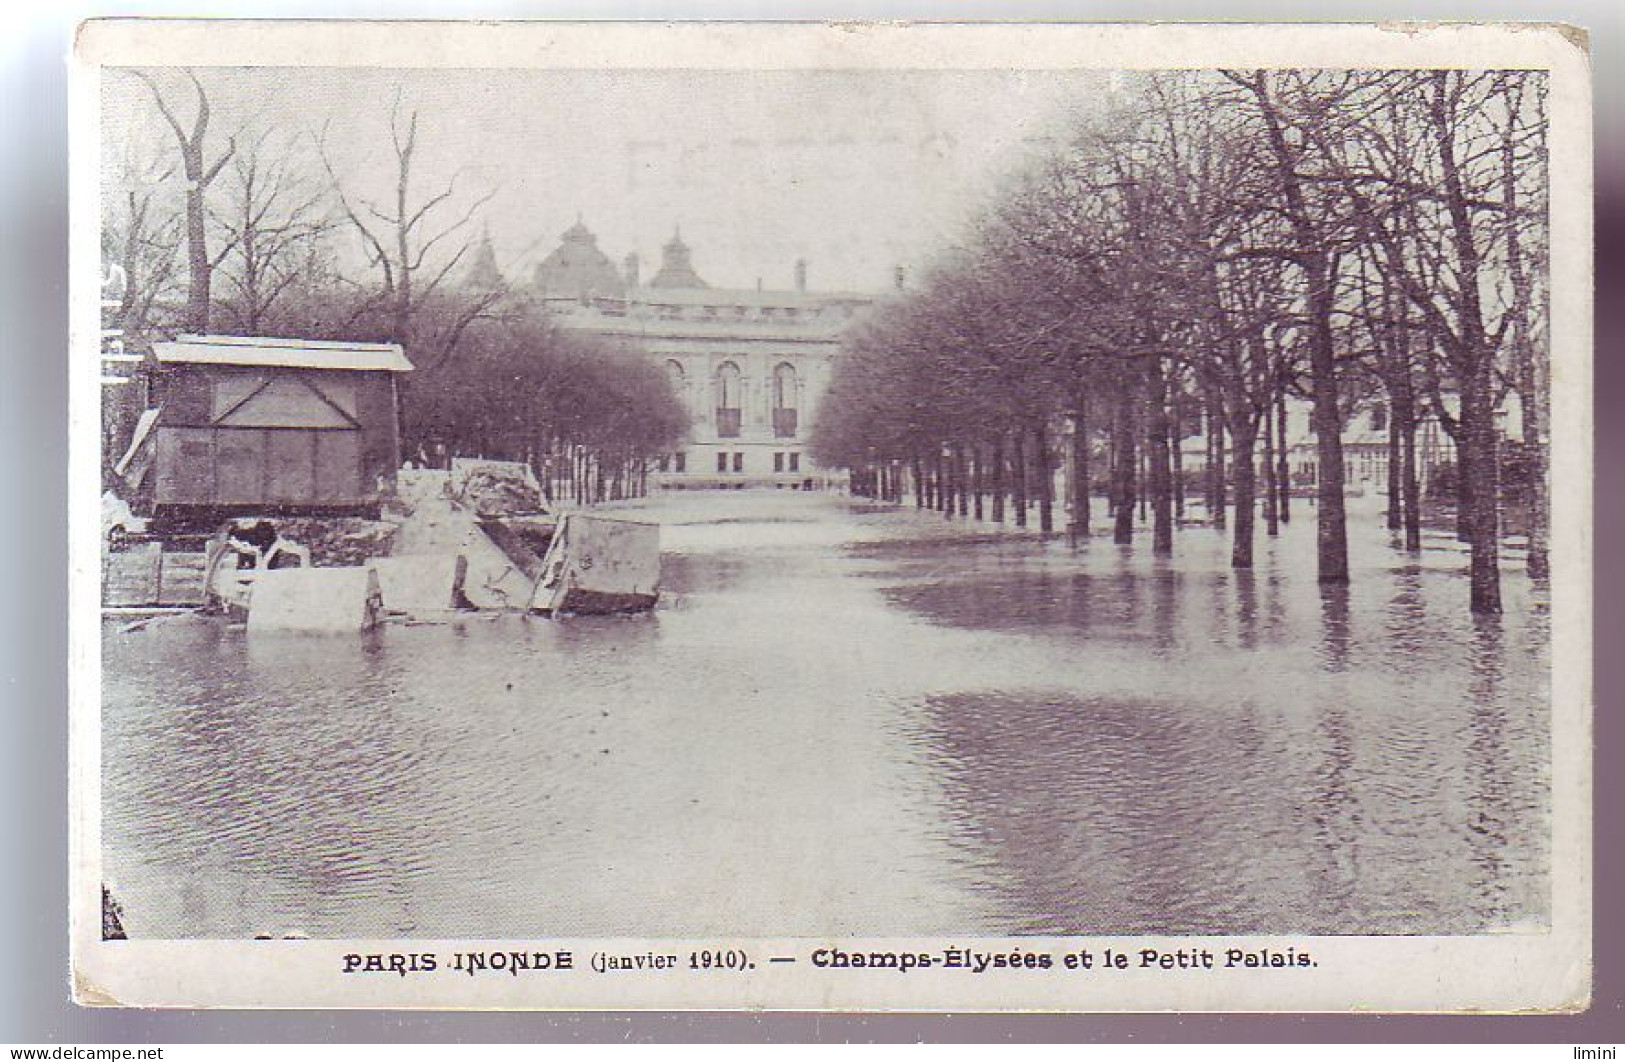 75 - PARIS - CHAMPS ELYSÉES Et PETIT PALAIS INONDES - - Paris Flood, 1910